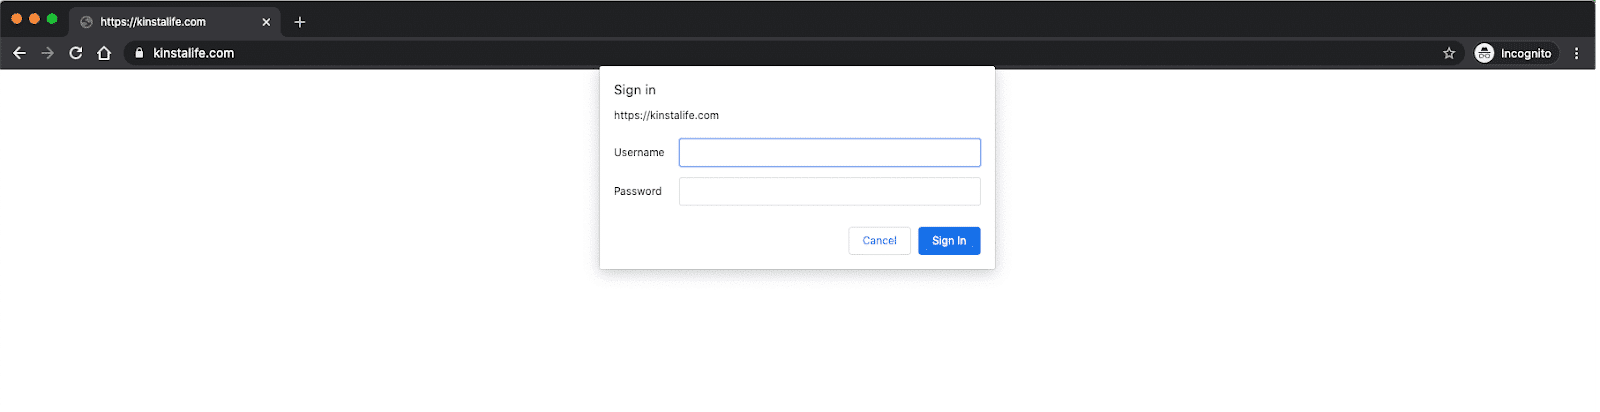 Voor wachtwoordbeveiliging moet je je aanmelden voordat je de site in je browser kunt bekijken.